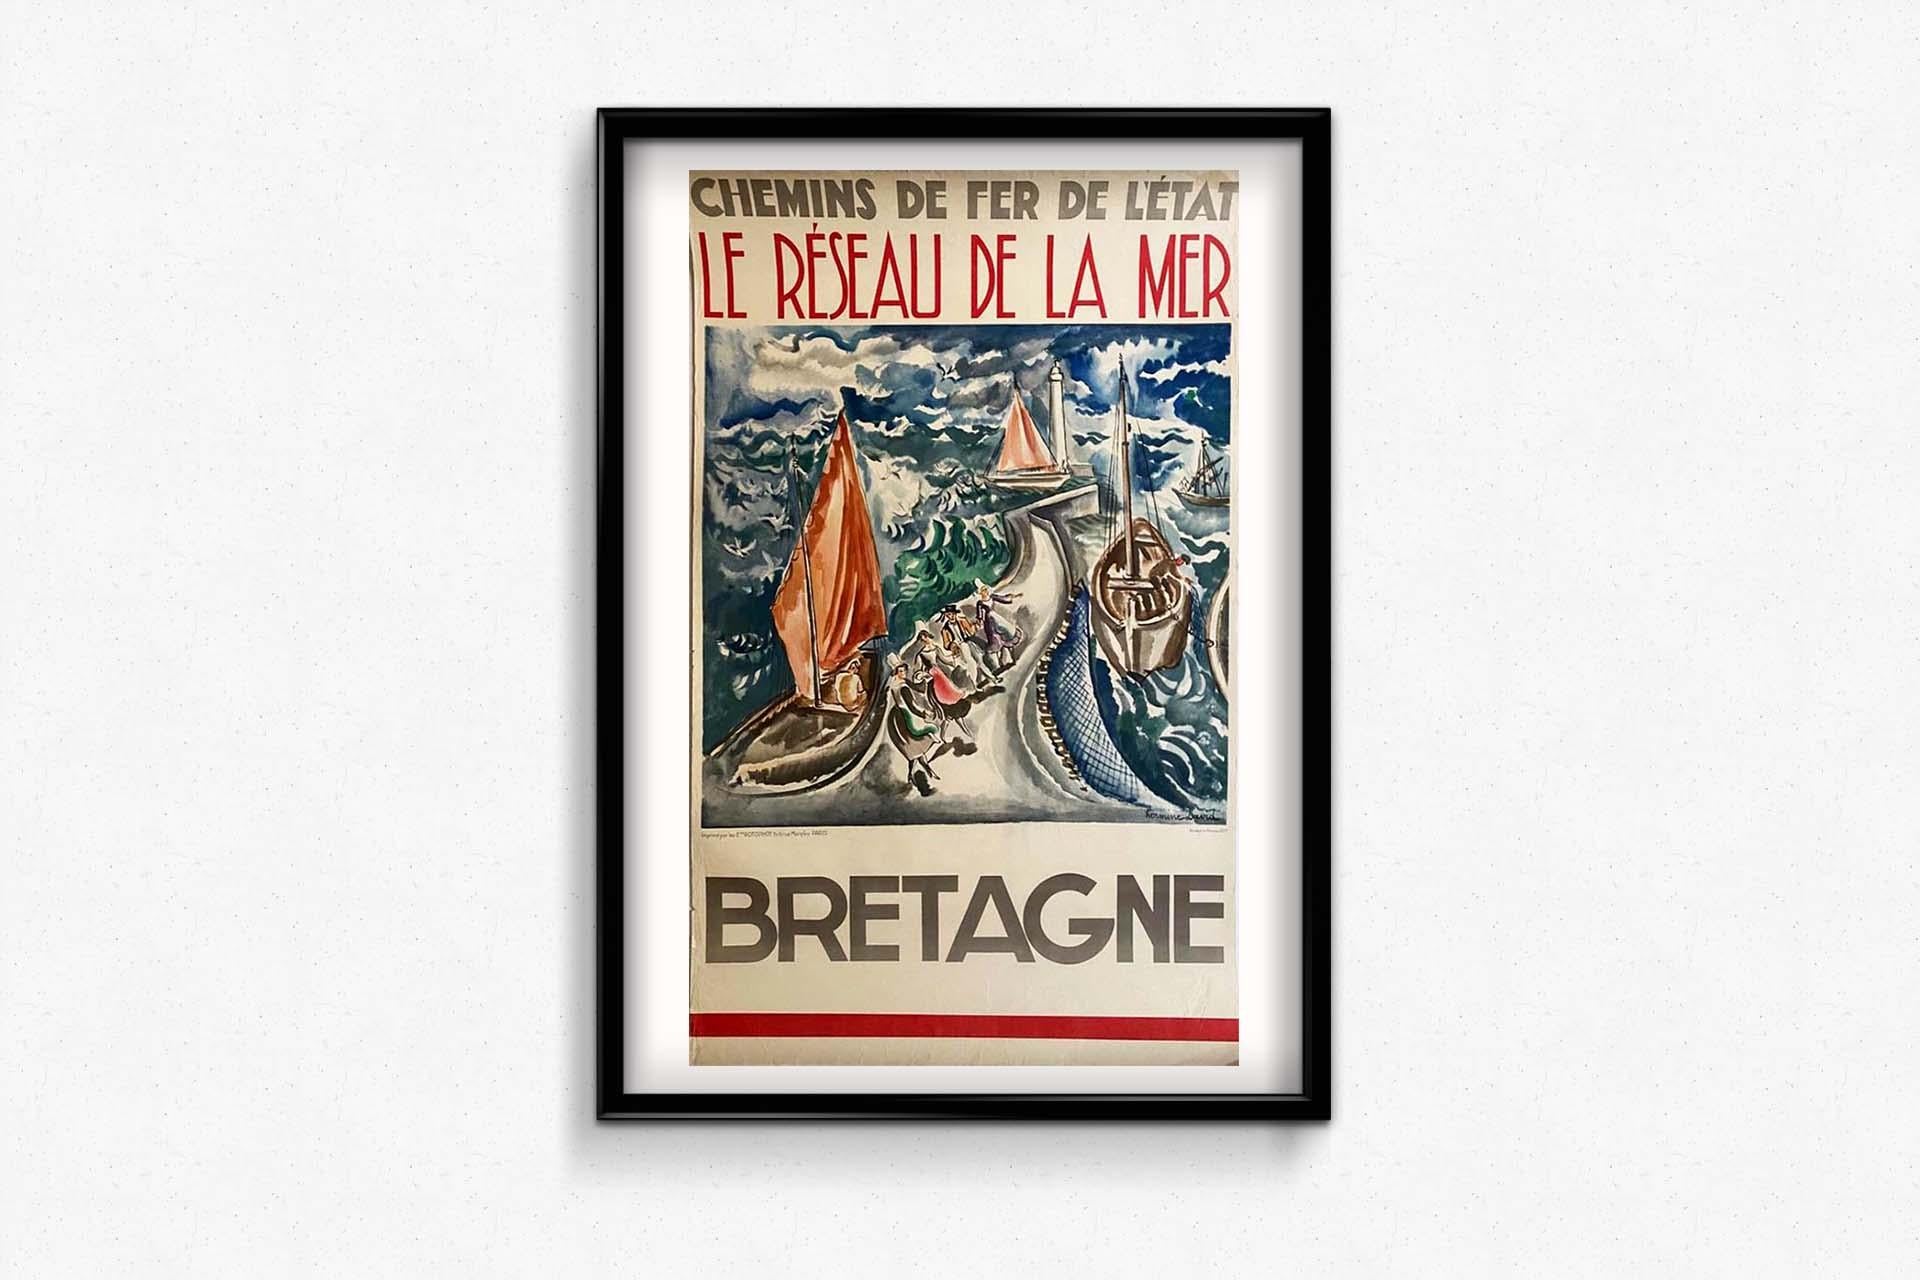 1937 original Chemins de Fer de l'État poster by Hermine David - Bretagne For Sale 3